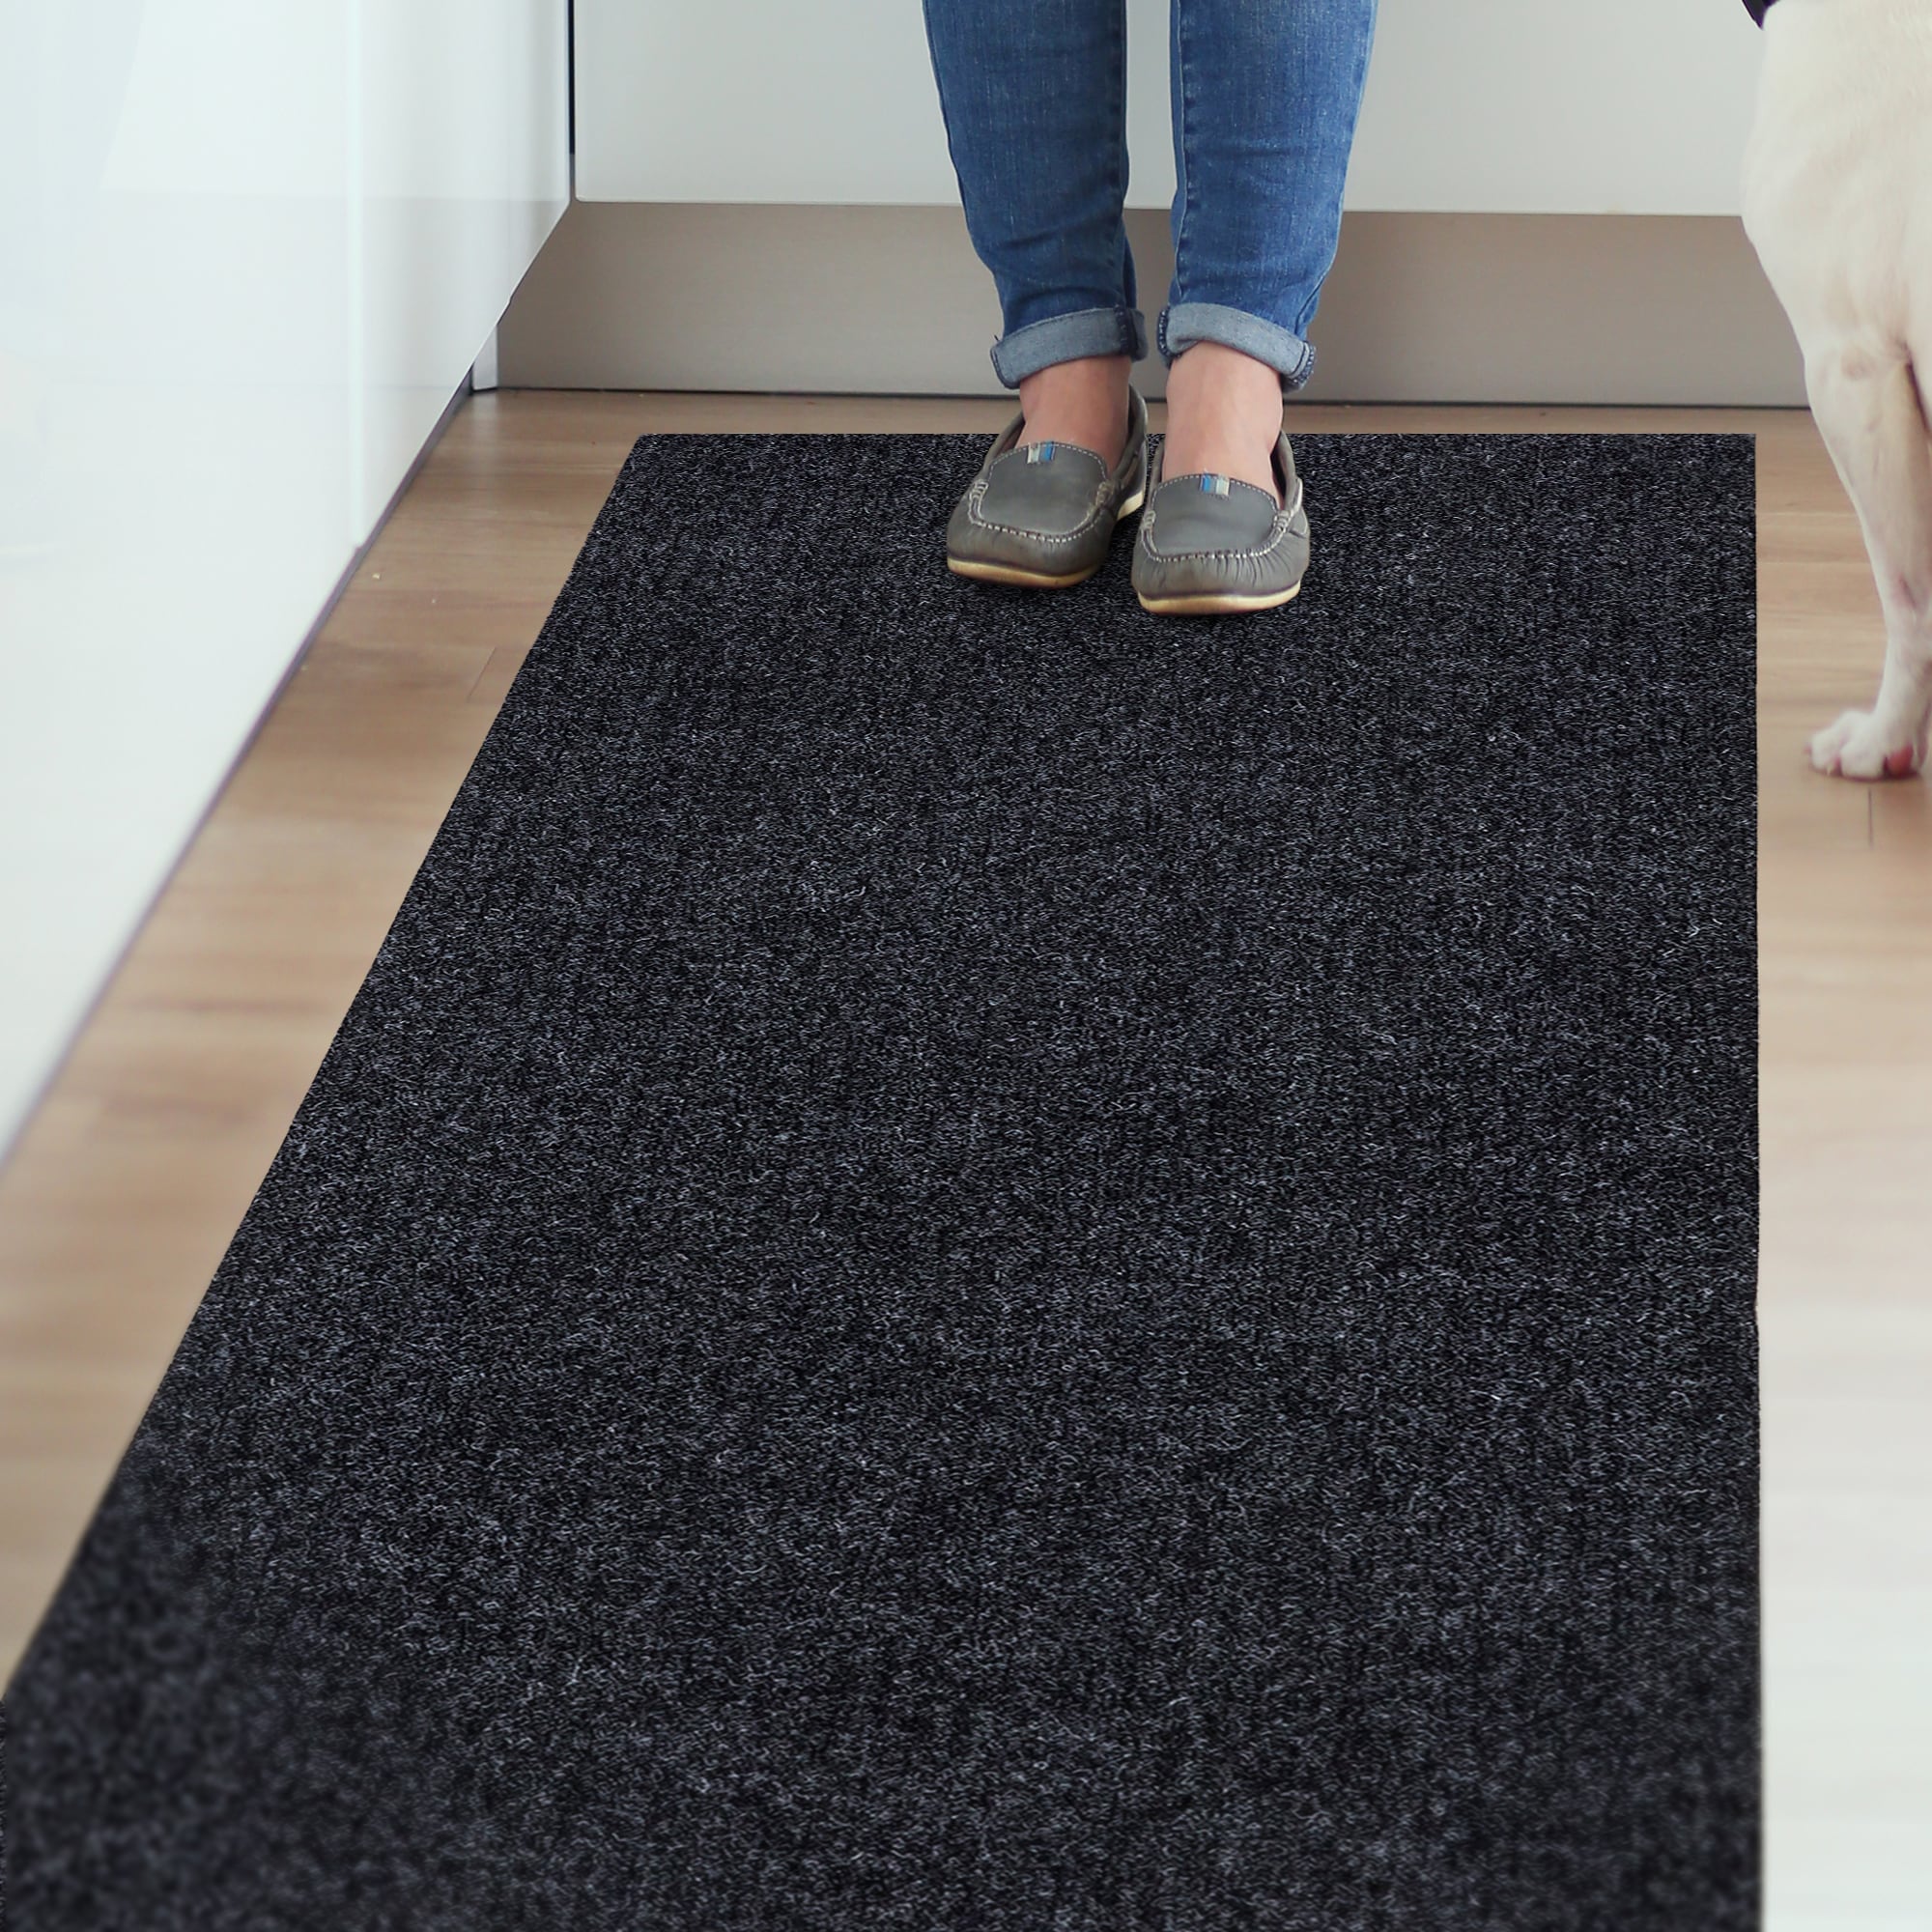 Ottomanson Easy Clean, Waterproof Non-Slip 2x3 Indoor/Outdoor Rubber Doormat, 24 in. x 36 in., Black Ribbed